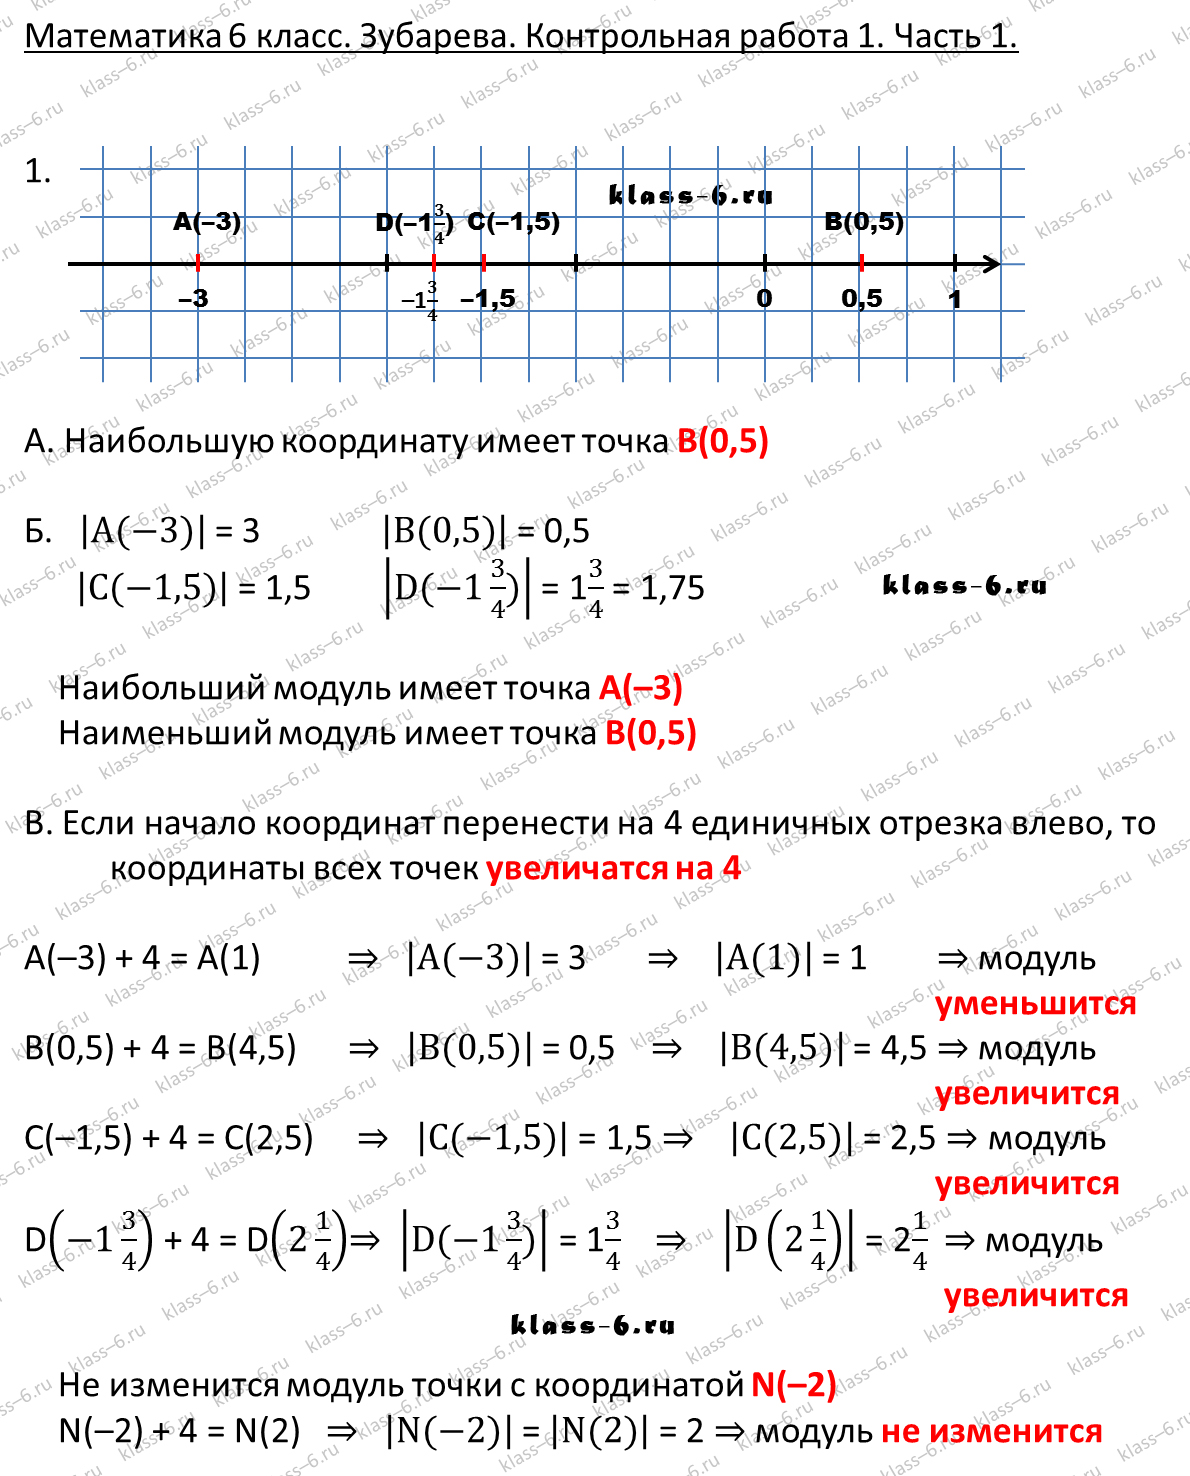 гдз математика Зубарева 6 класс ответ и подробное решение с объяснениями контрольной работы № 1 (1)